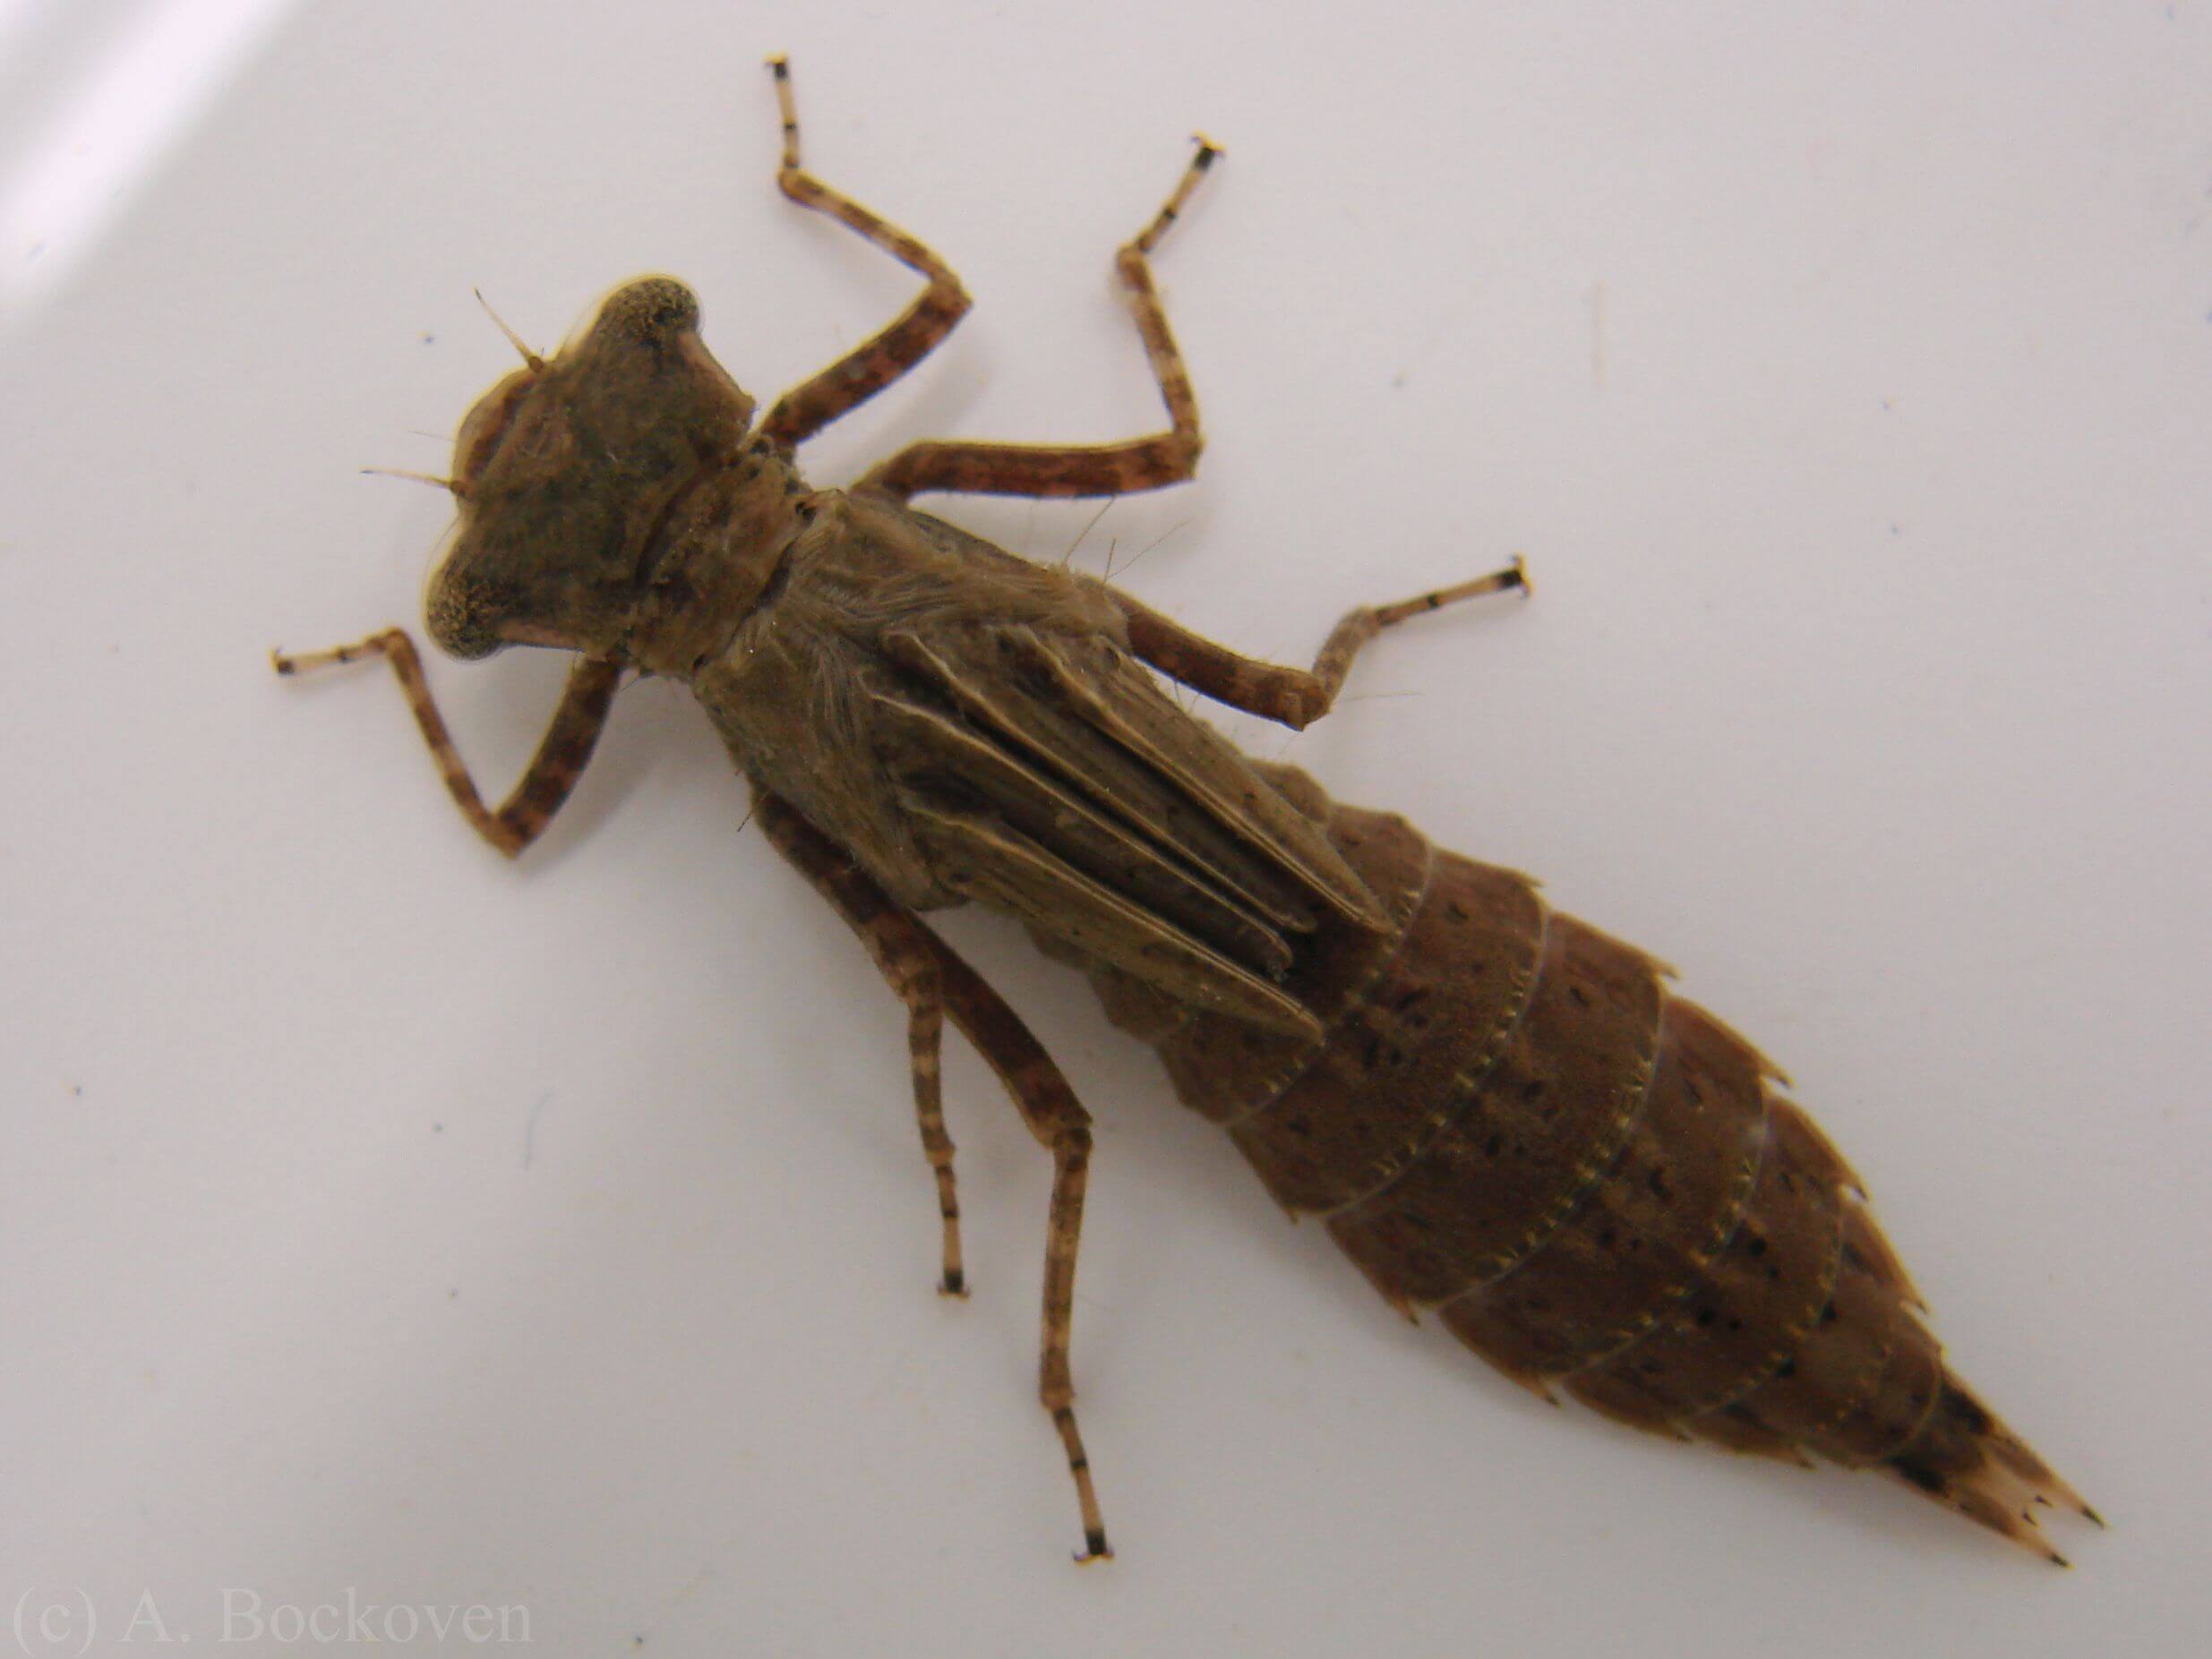 Utseende av en nymf, sländans larv.